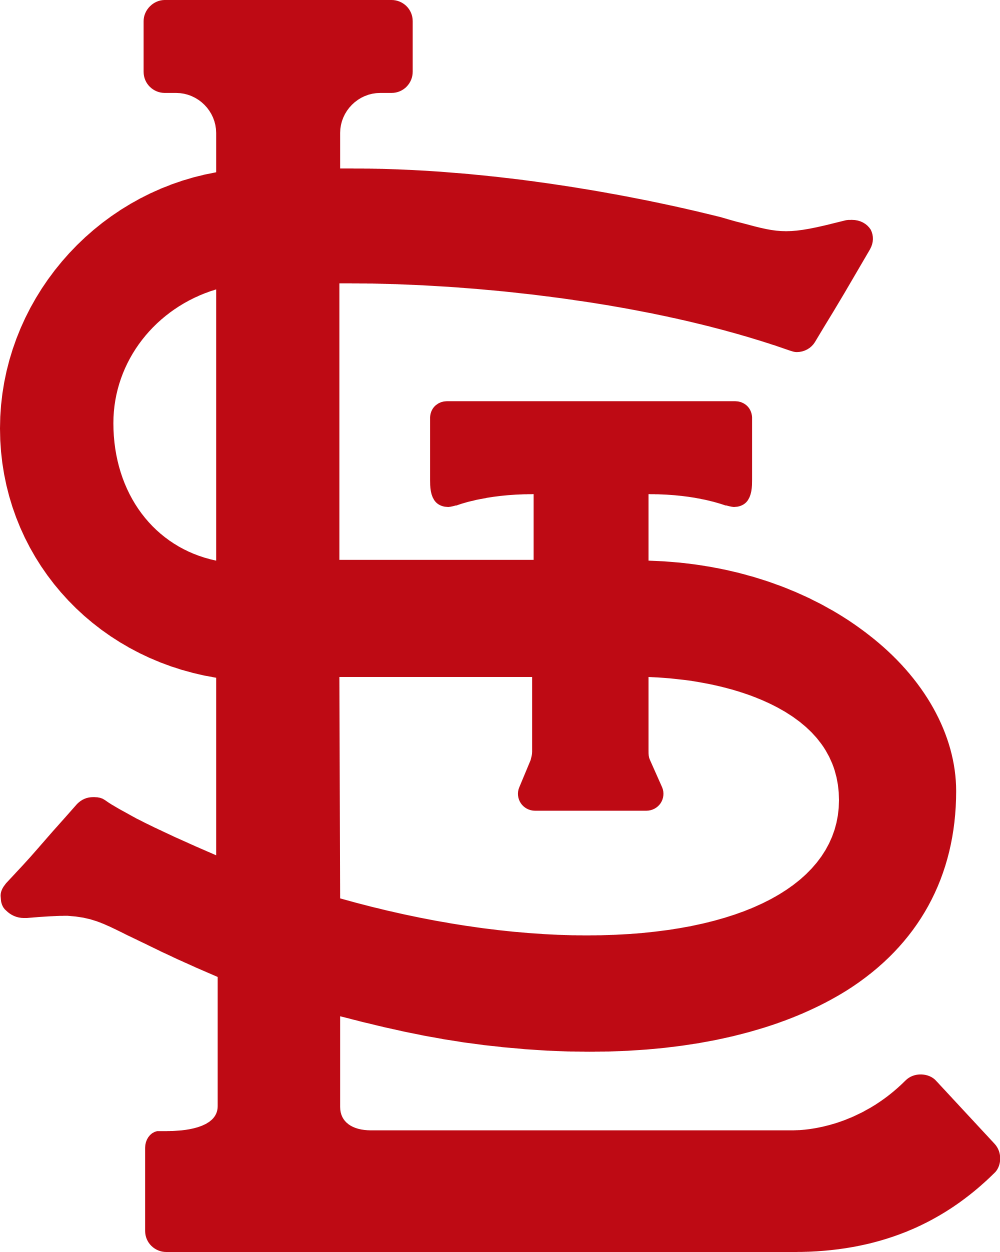 St. Louis Cardinals logo png transparent